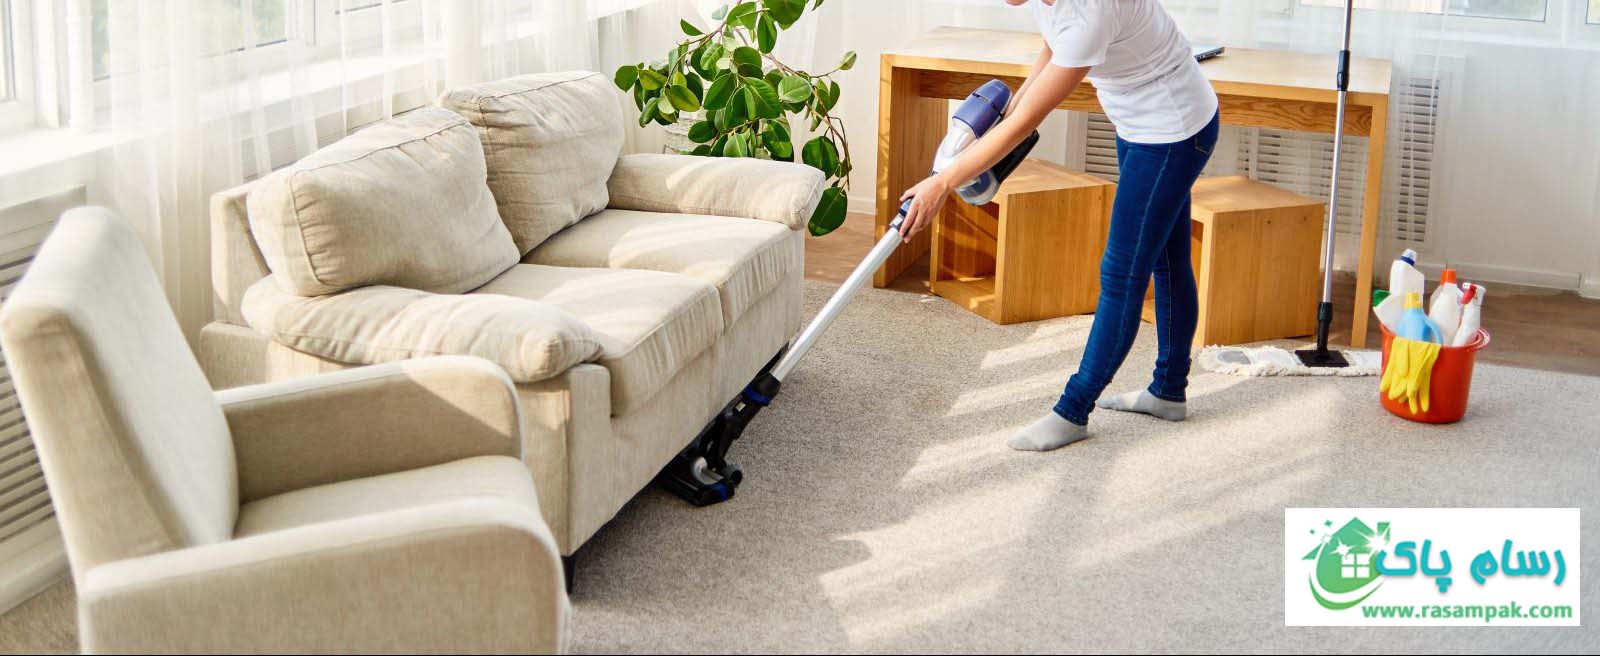 نظافت منزل در سریعترین زمان- زیر تخت و مبل